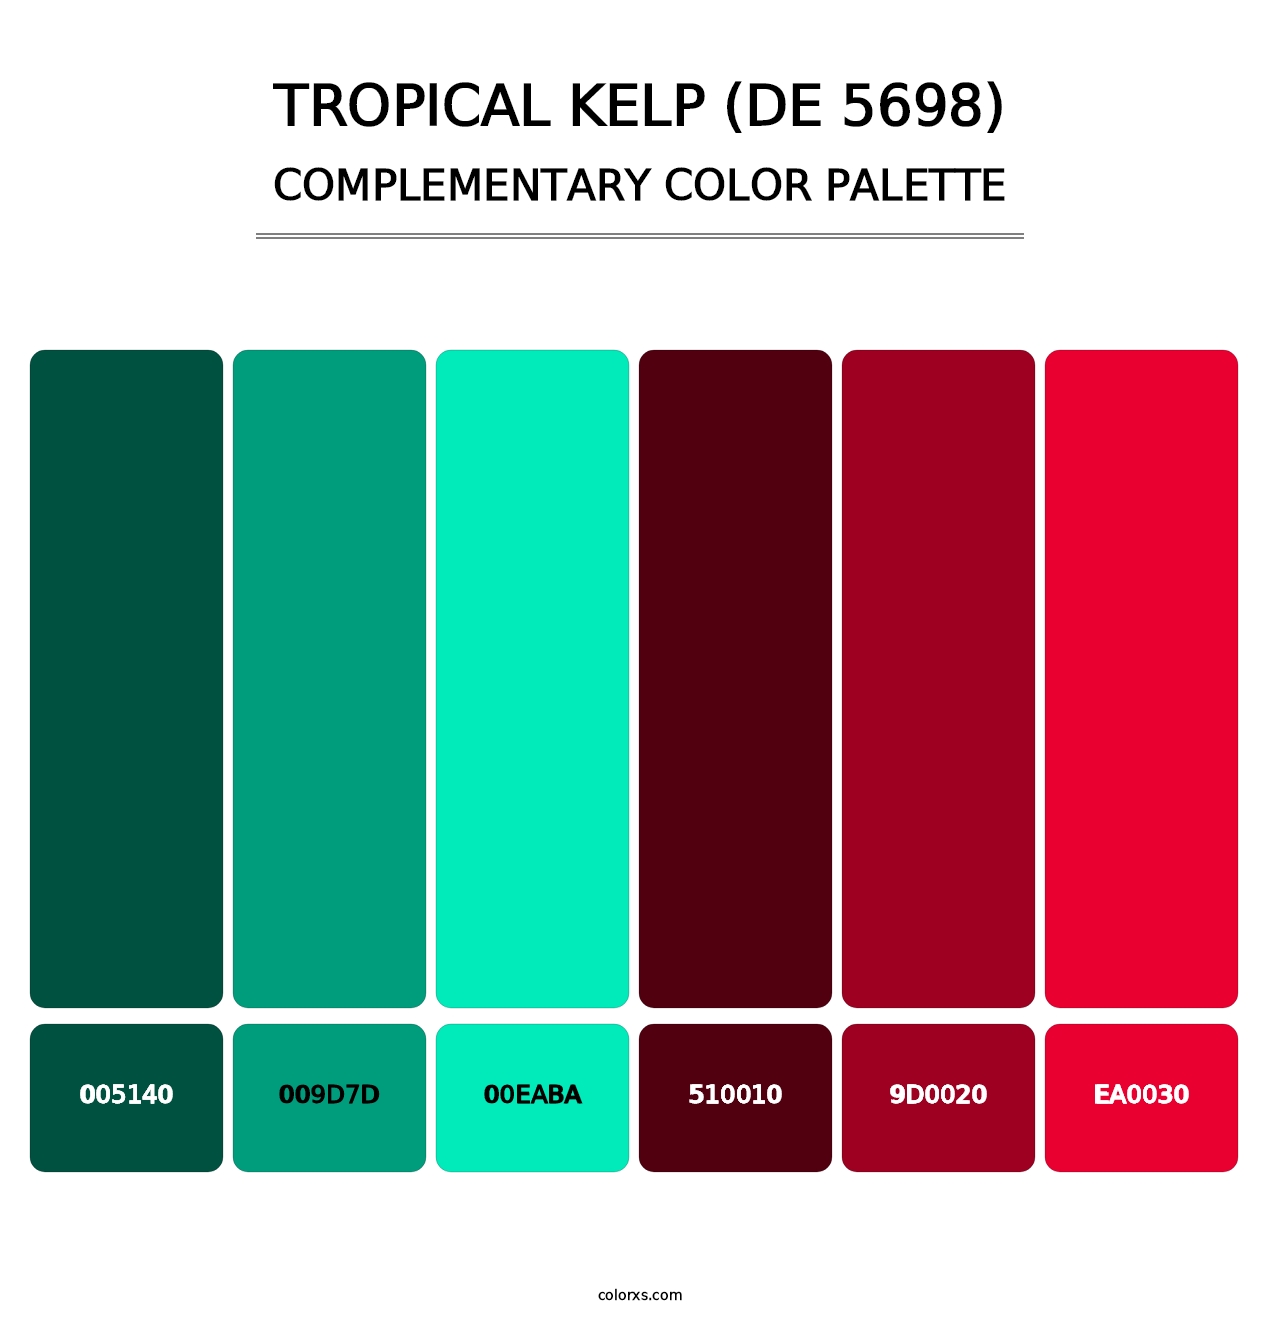 Tropical Kelp (DE 5698) - Complementary Color Palette